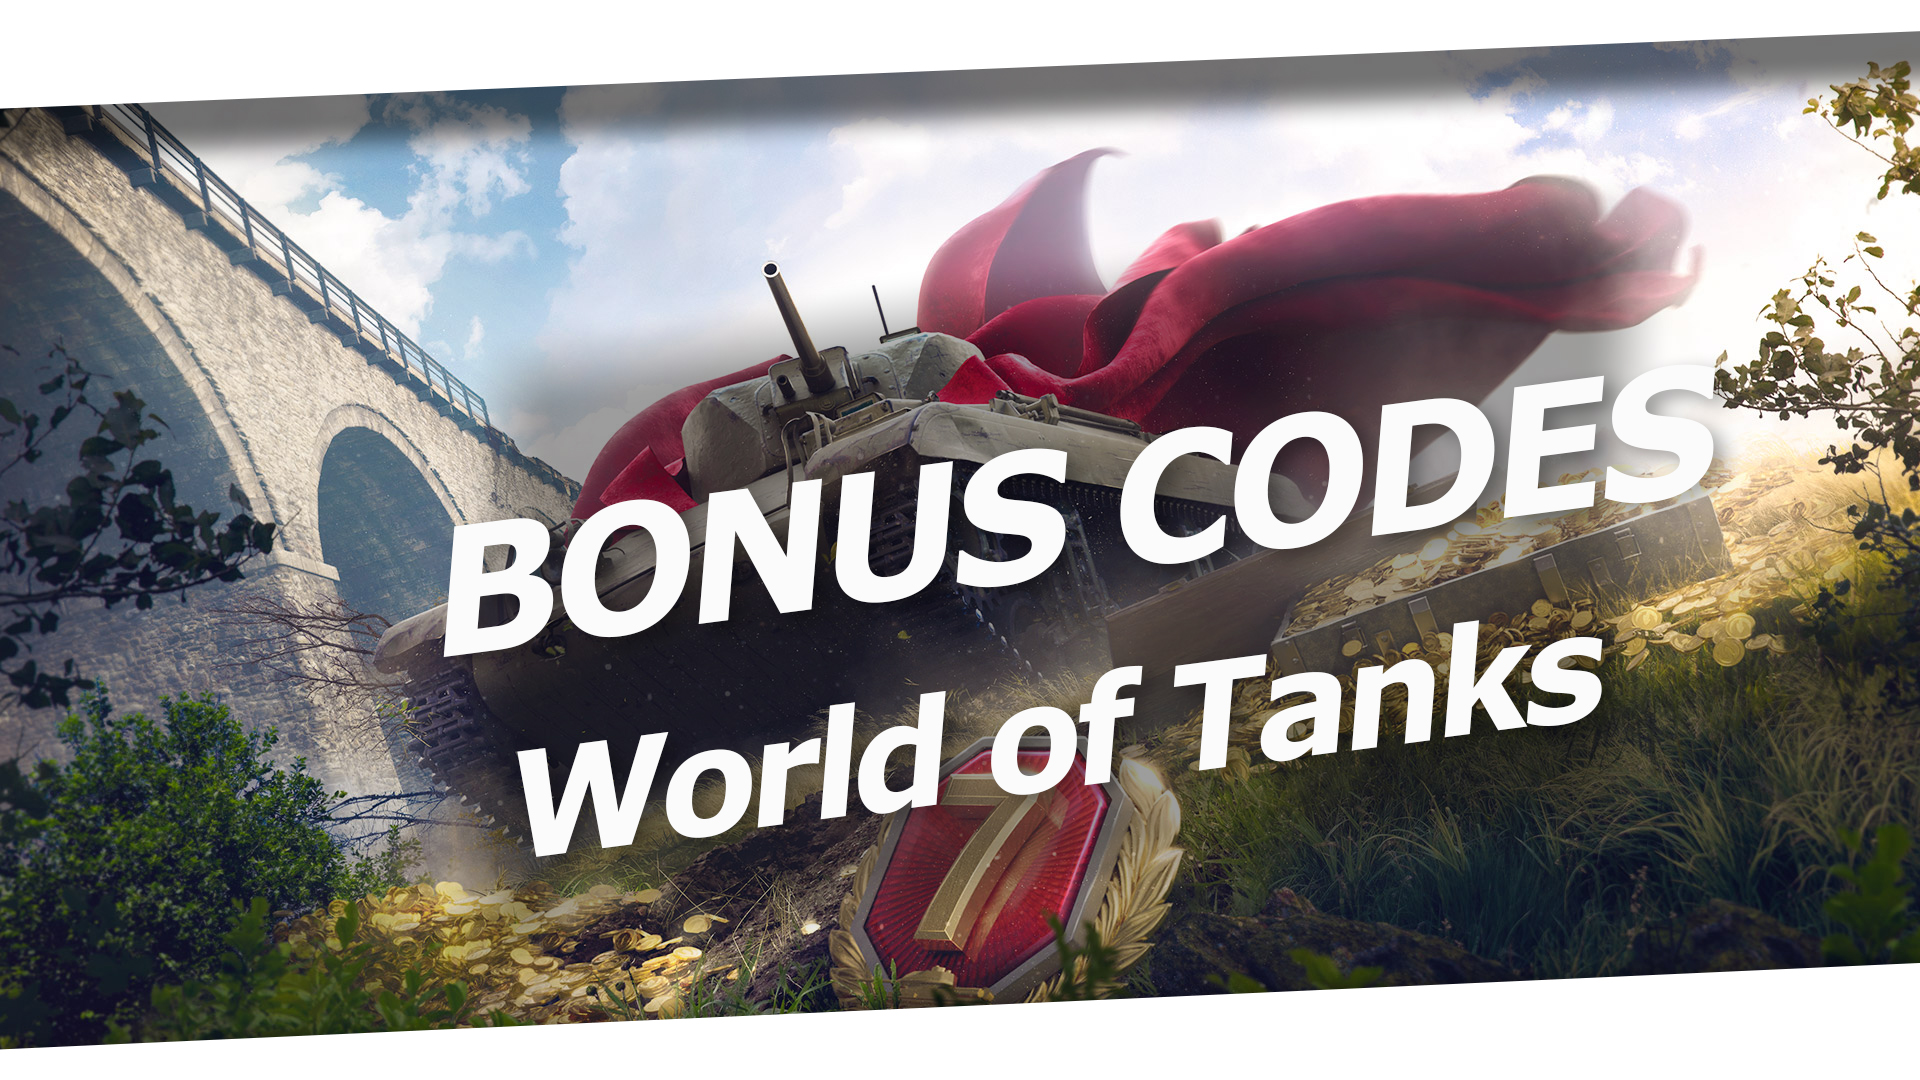 World of tanks premium code